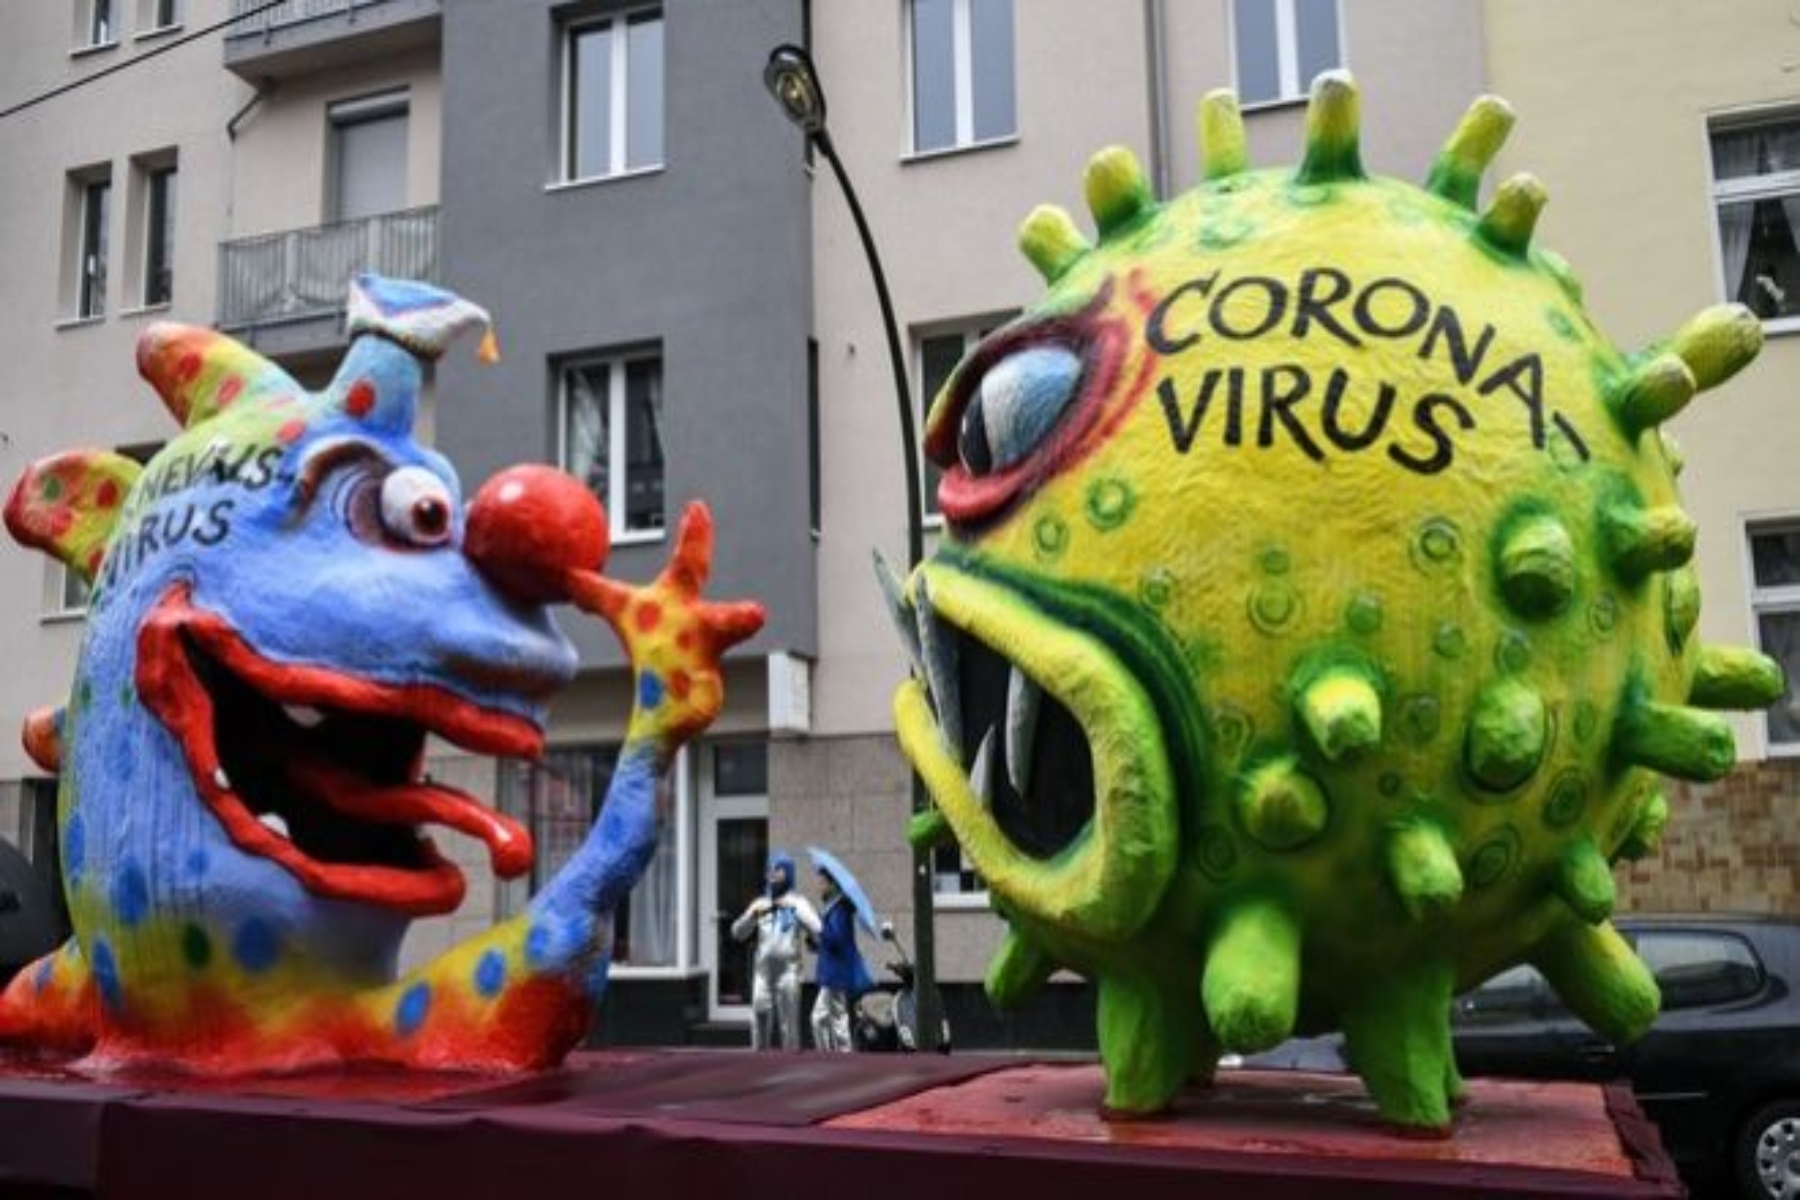 Πελετίδης Καρναβάλι Πάτρας: Δεν θα γίνουν οι παρελάσεις τις Απόκριες φέτος σύμφωνα με τον Δήμαρχο [vid]